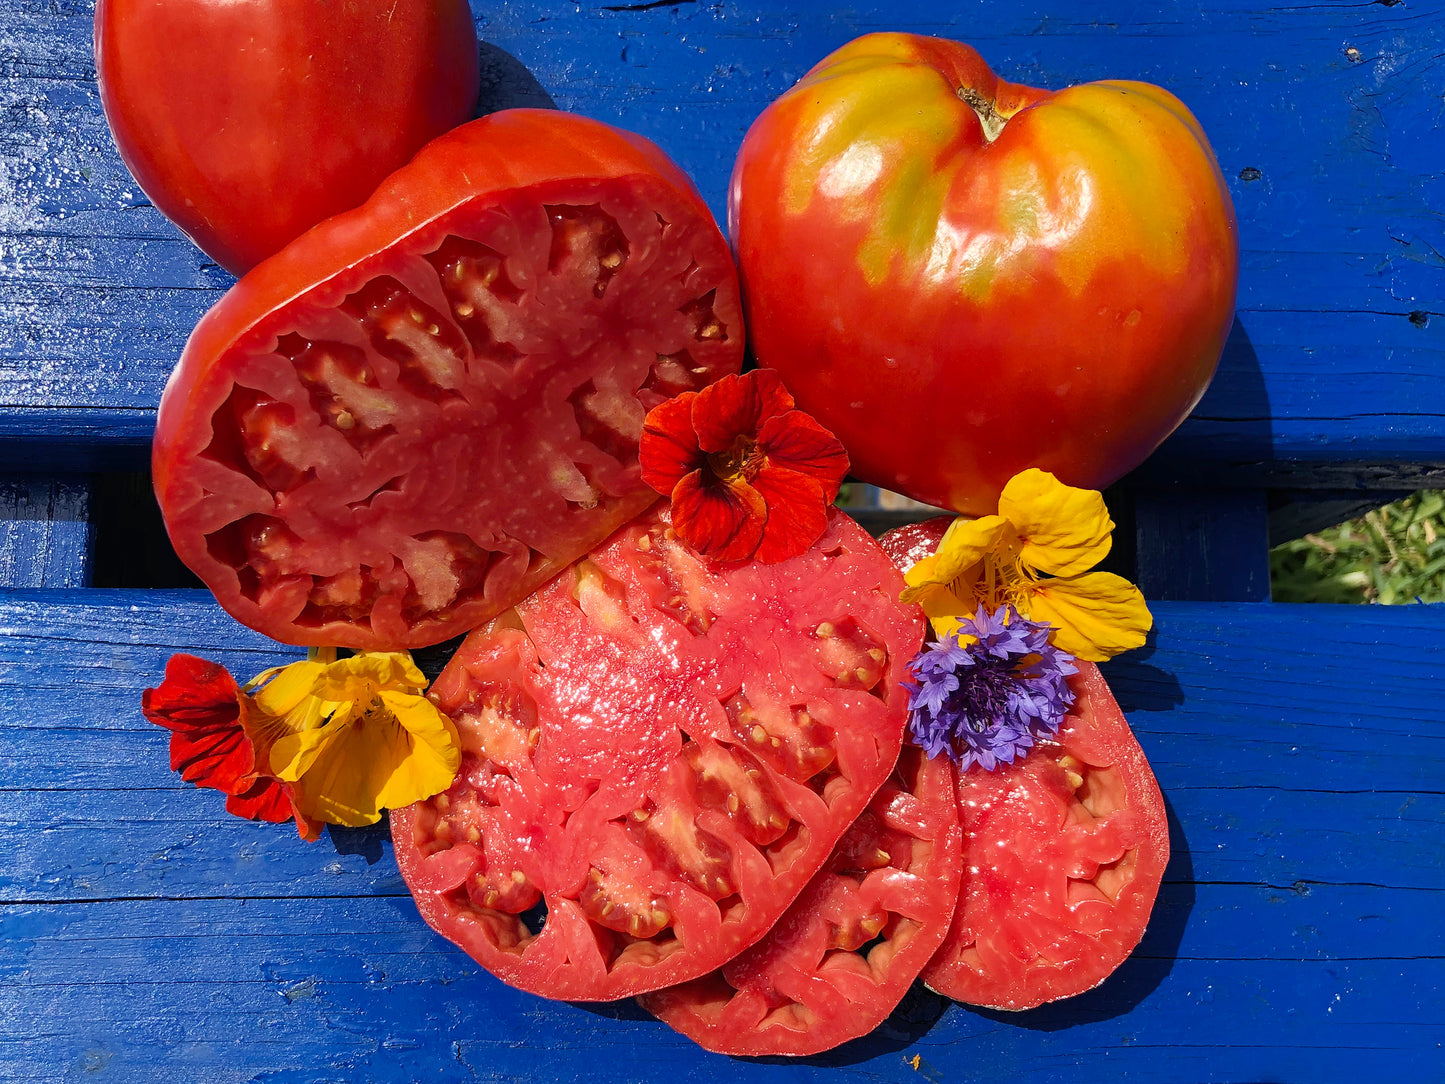 Pomodoro Cuore Antico di Acqui Terme Tomato